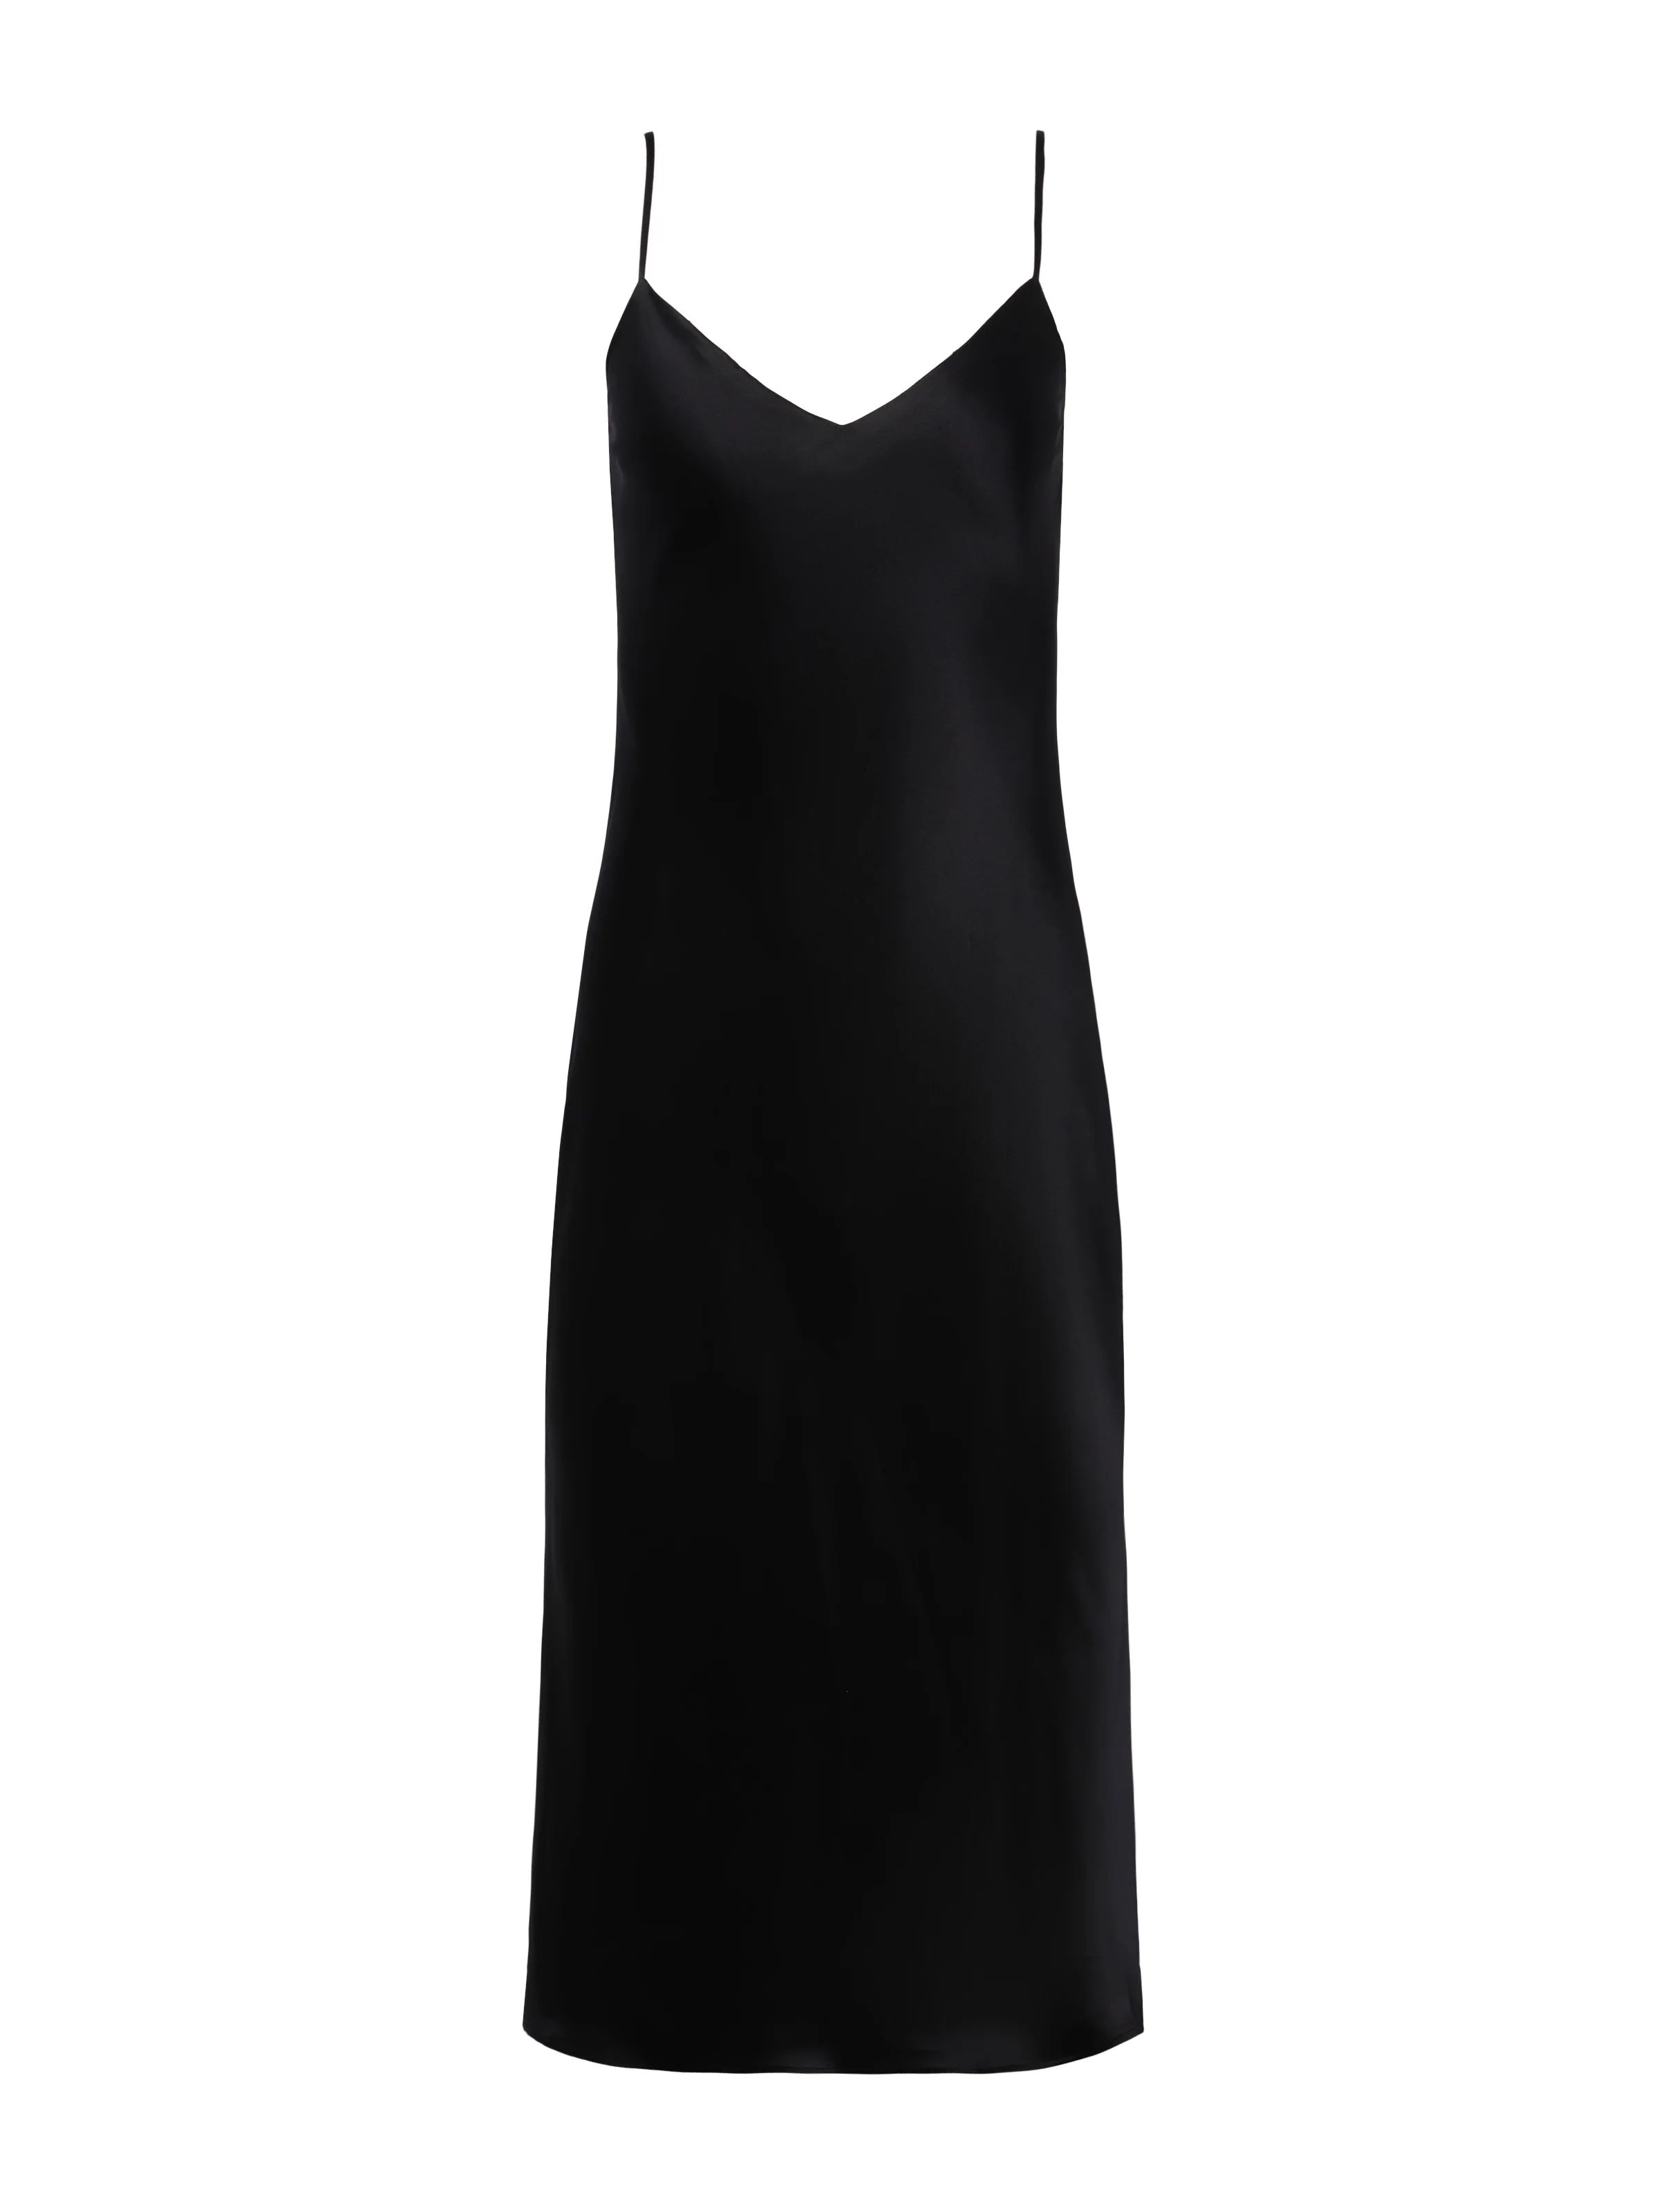 L'AGENCE Jodie V-Neck Silk Slip Dress in Black Charmeuse | L'Agence